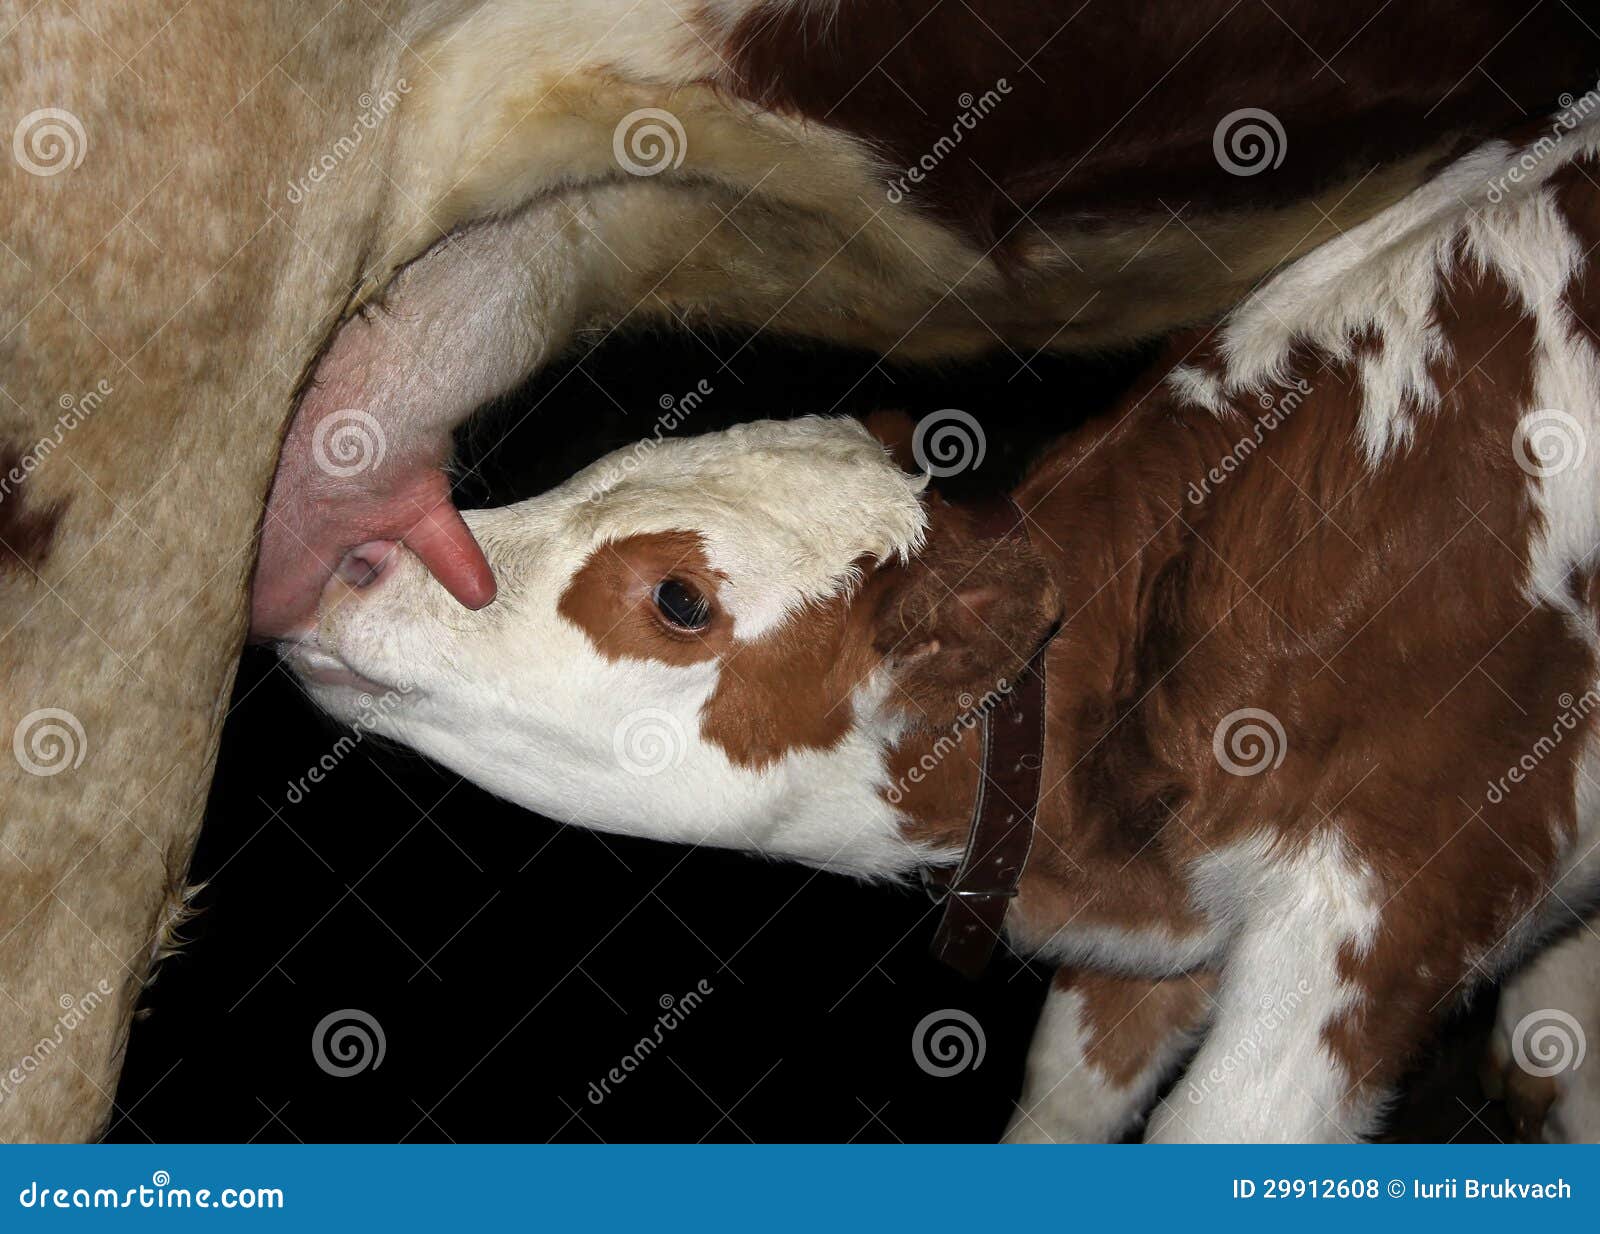 brian ahlberg add photo calf sucking a dick